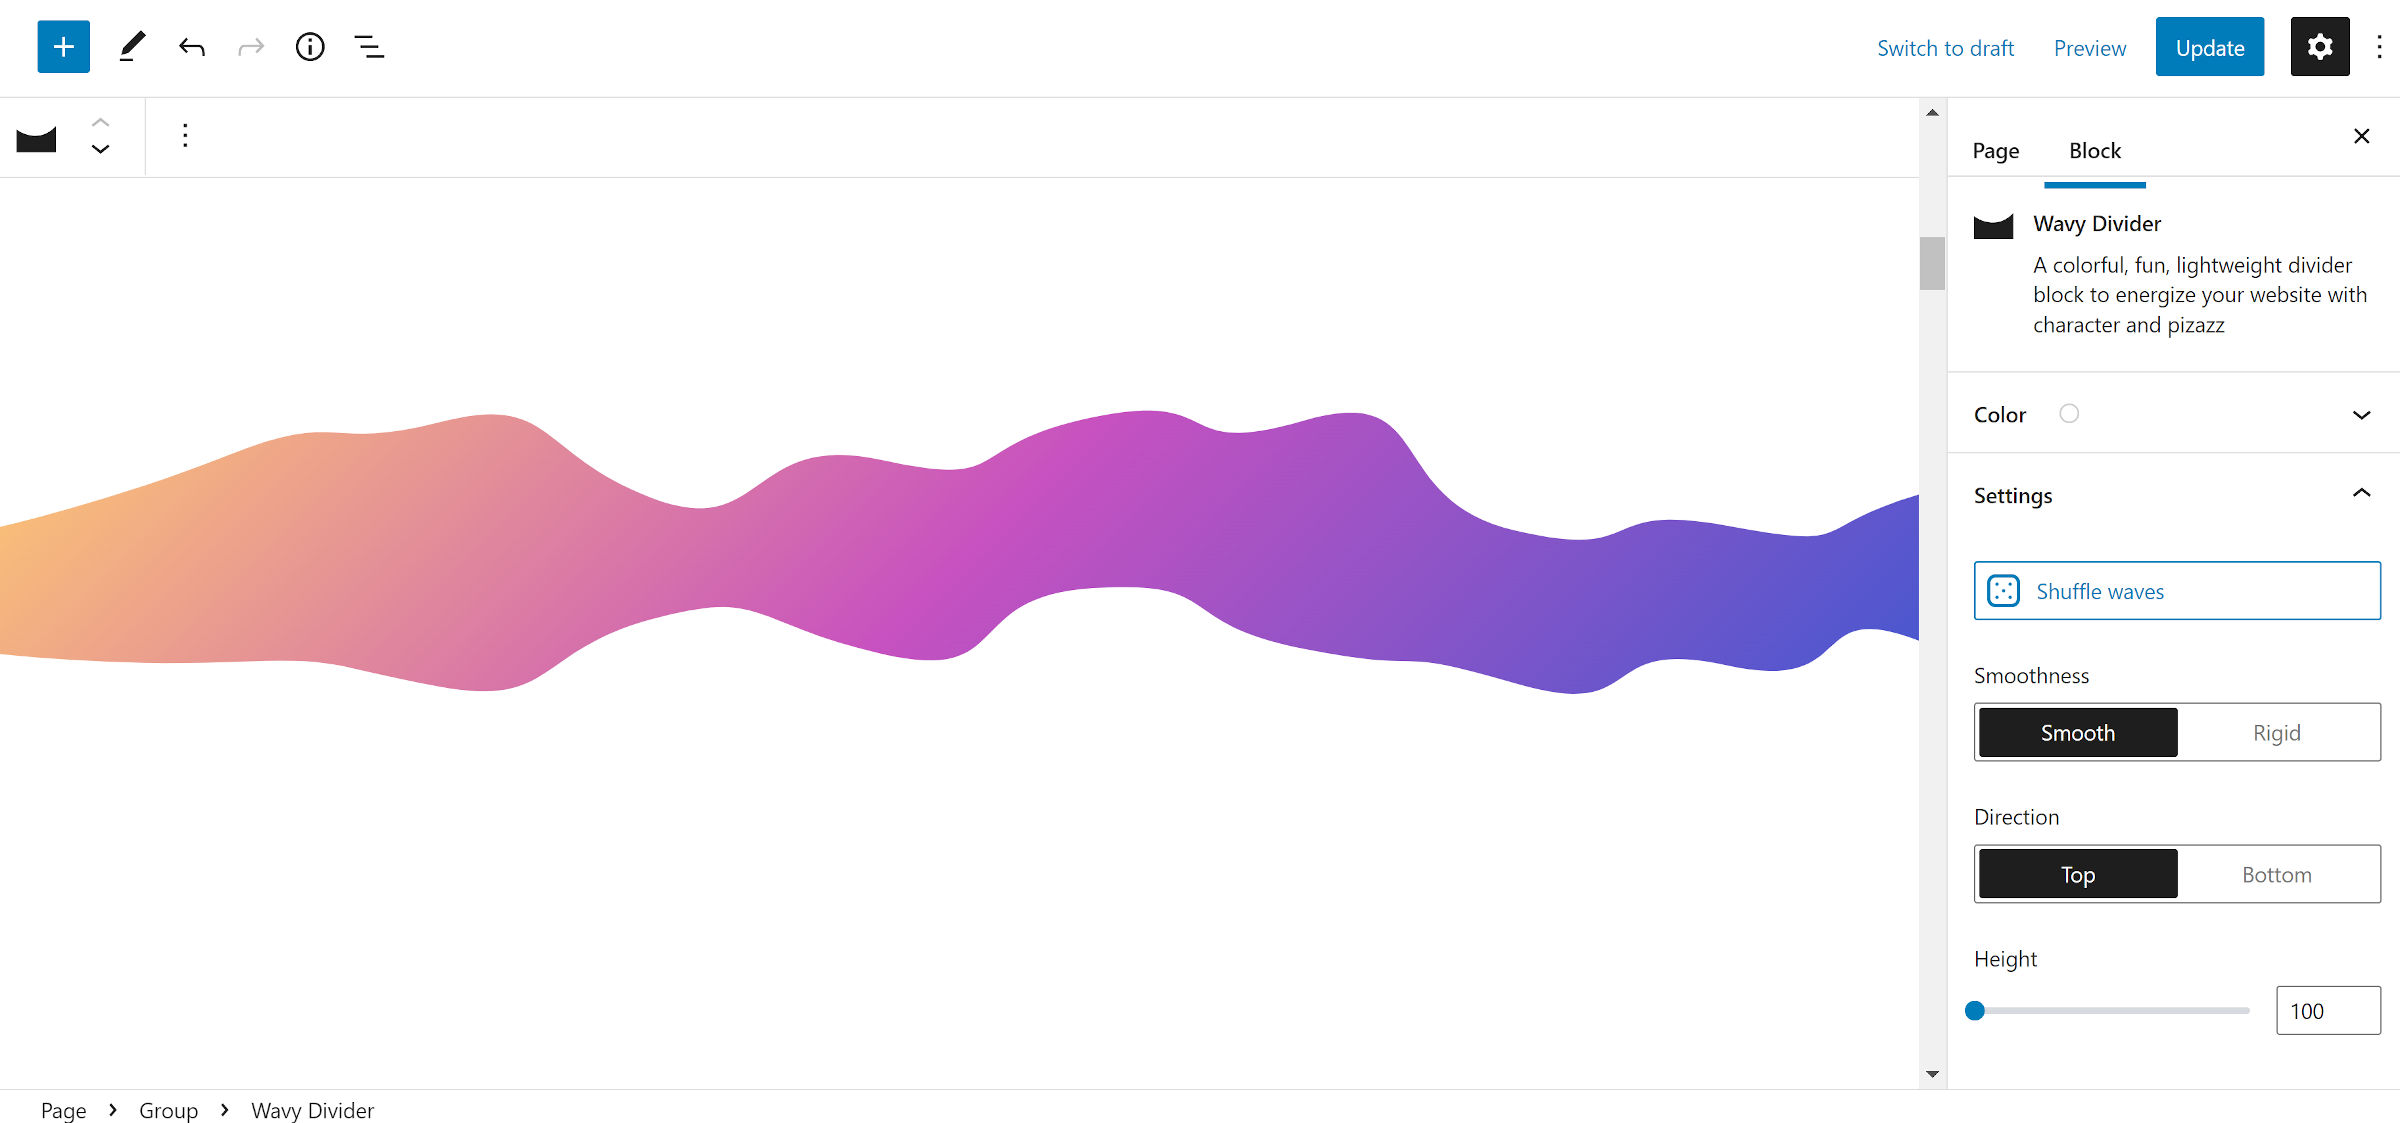 Un gradiente ondulato arancione, rosa, viola e blu che scorre sullo schermo.